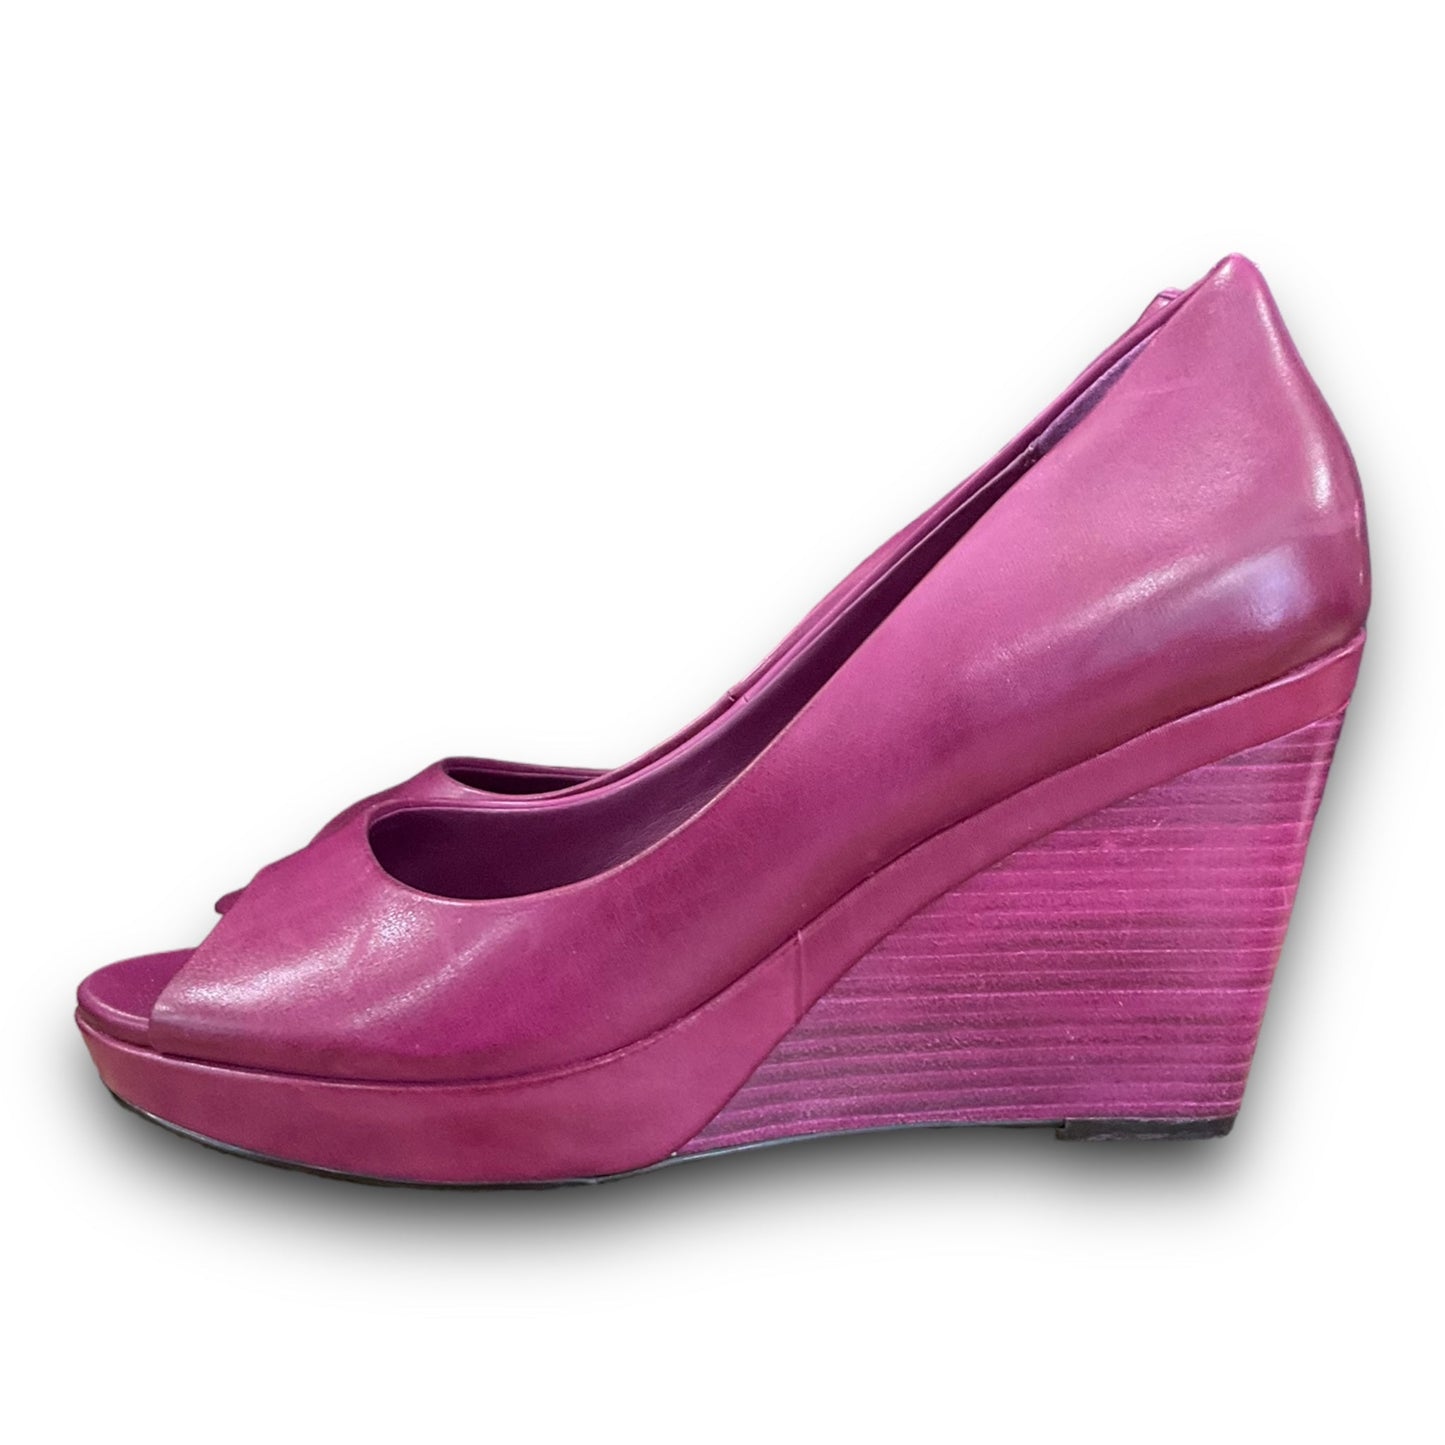 Purple Shoes Heels Wedge Cole-haan, Size 8